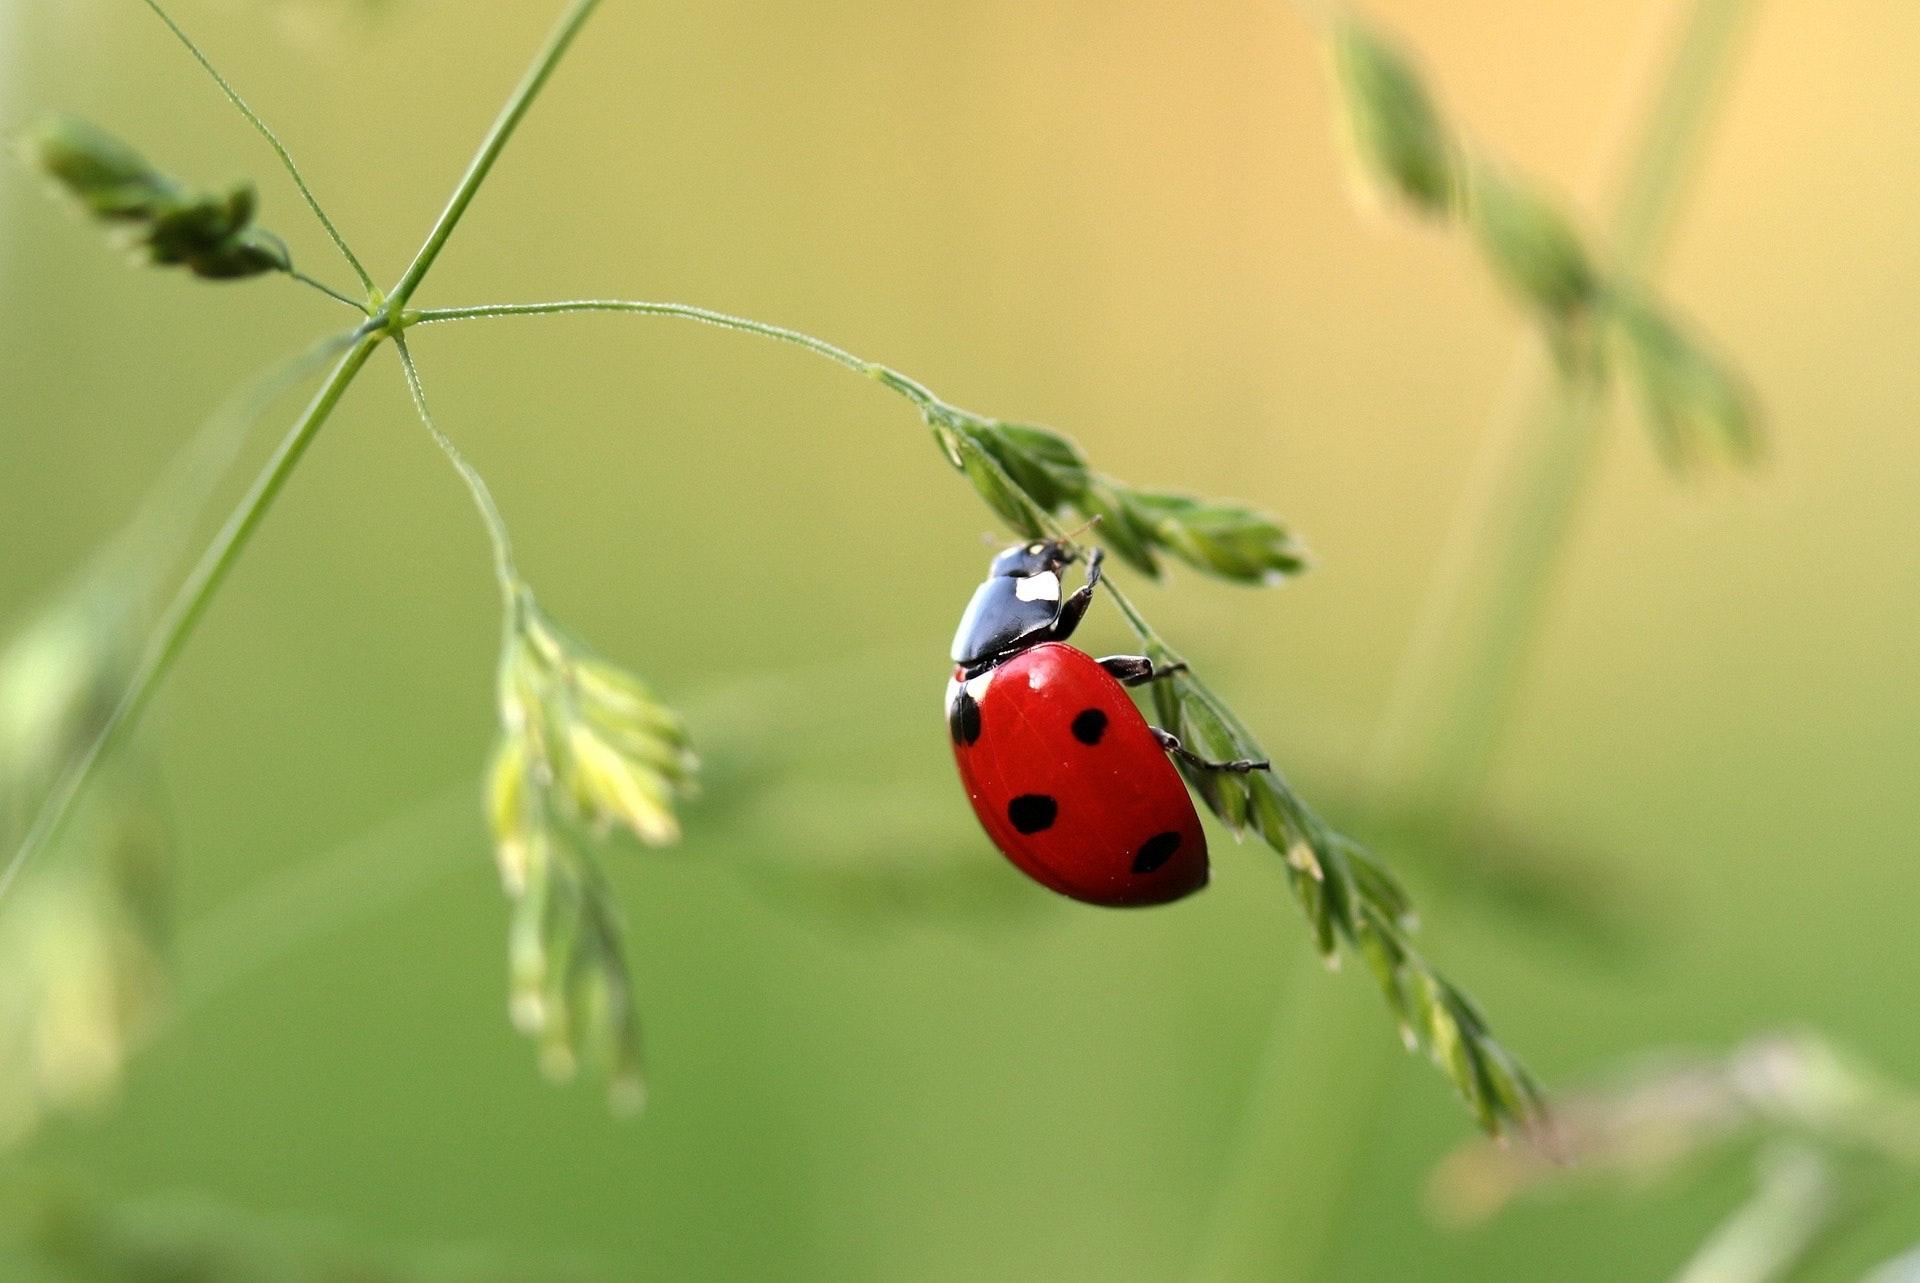 Close Up Photo of Ladybug on Leaf during Daytime · Free